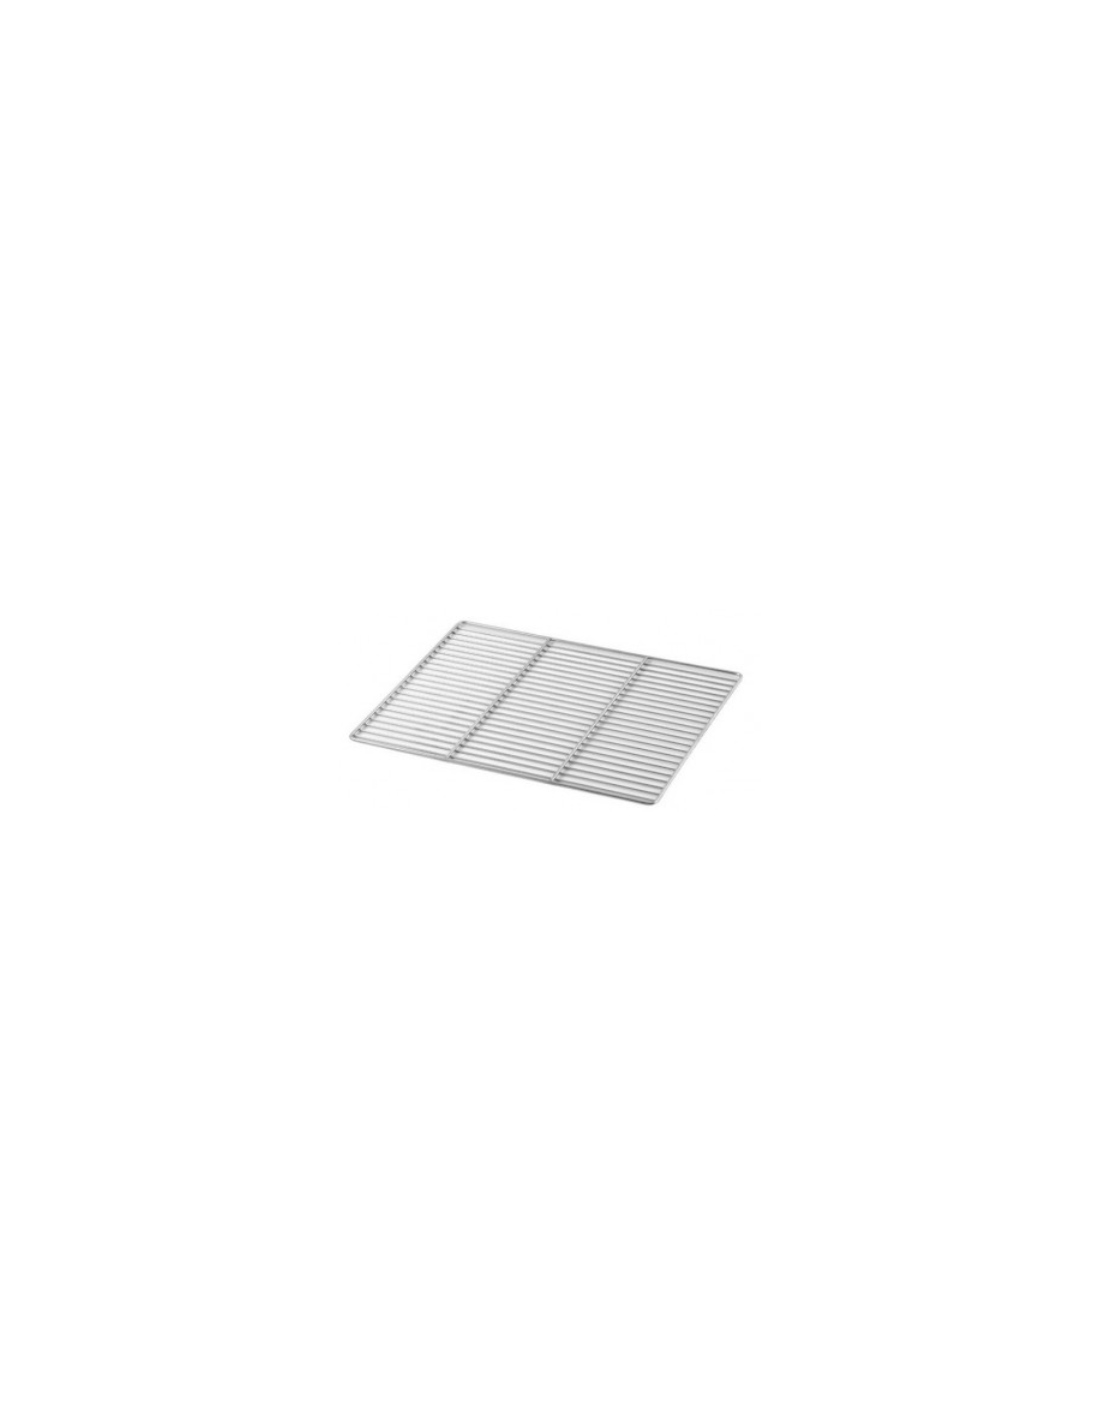 Parrilla de acero inoxidable GN 1/1( cm 53 x 32.5)